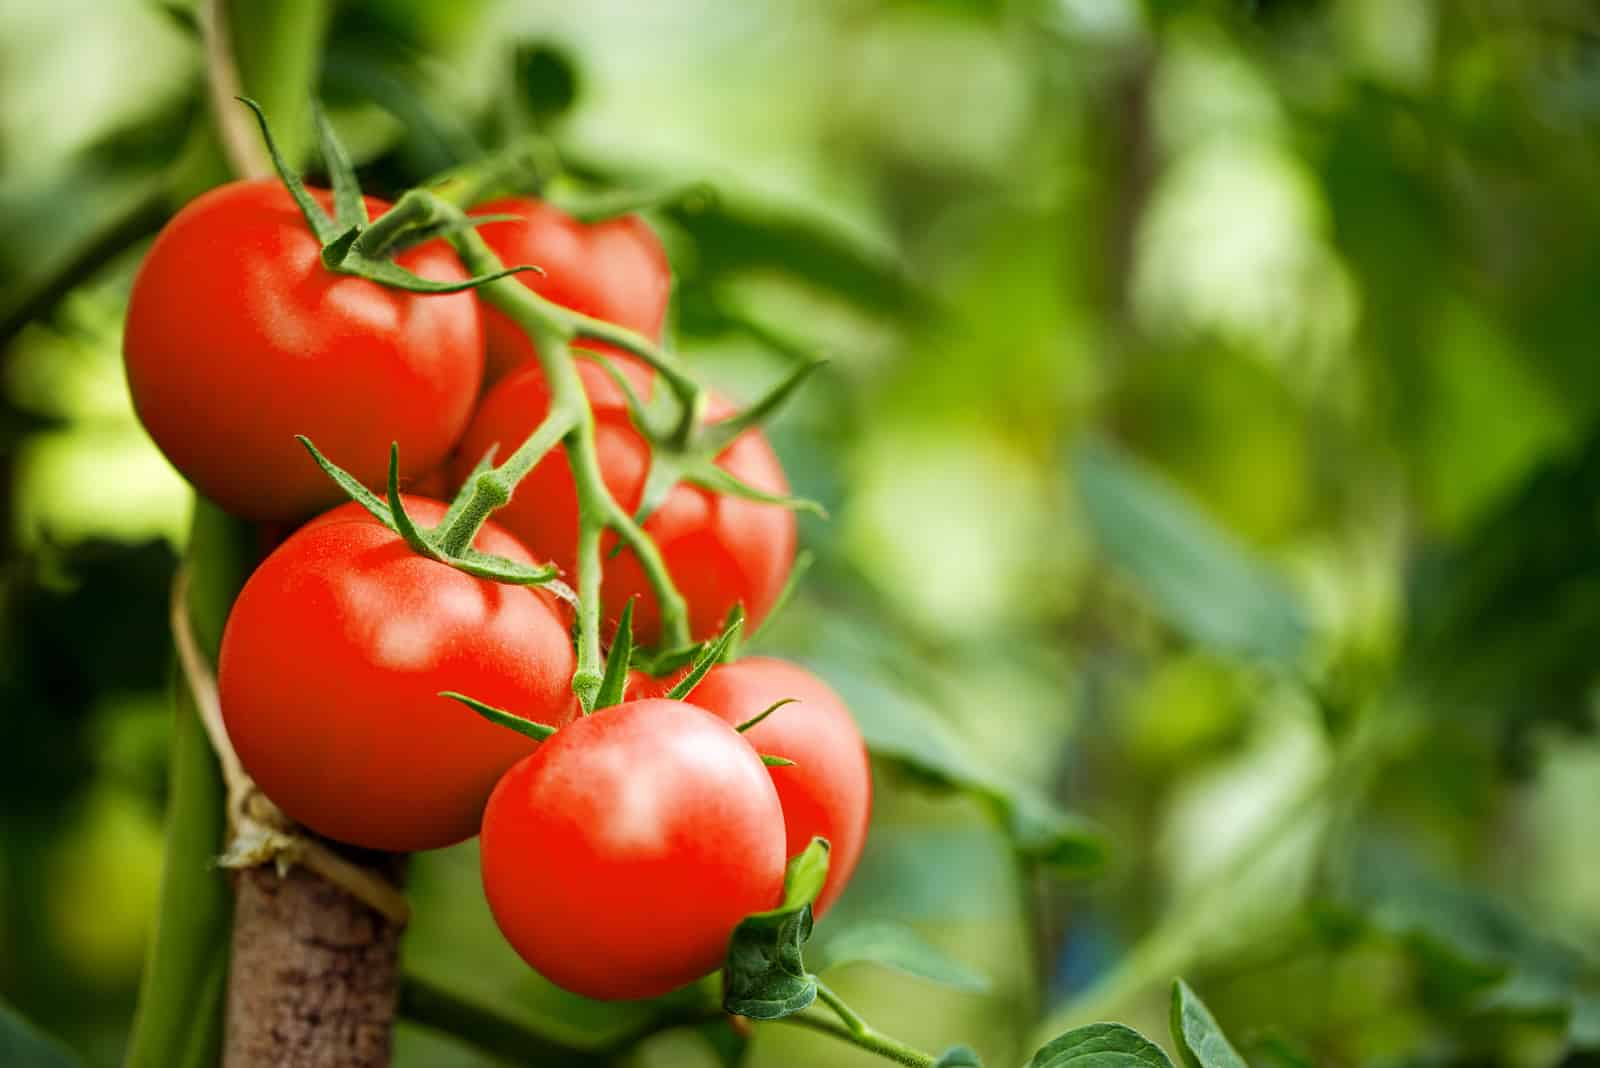 tomatoes growing in garden